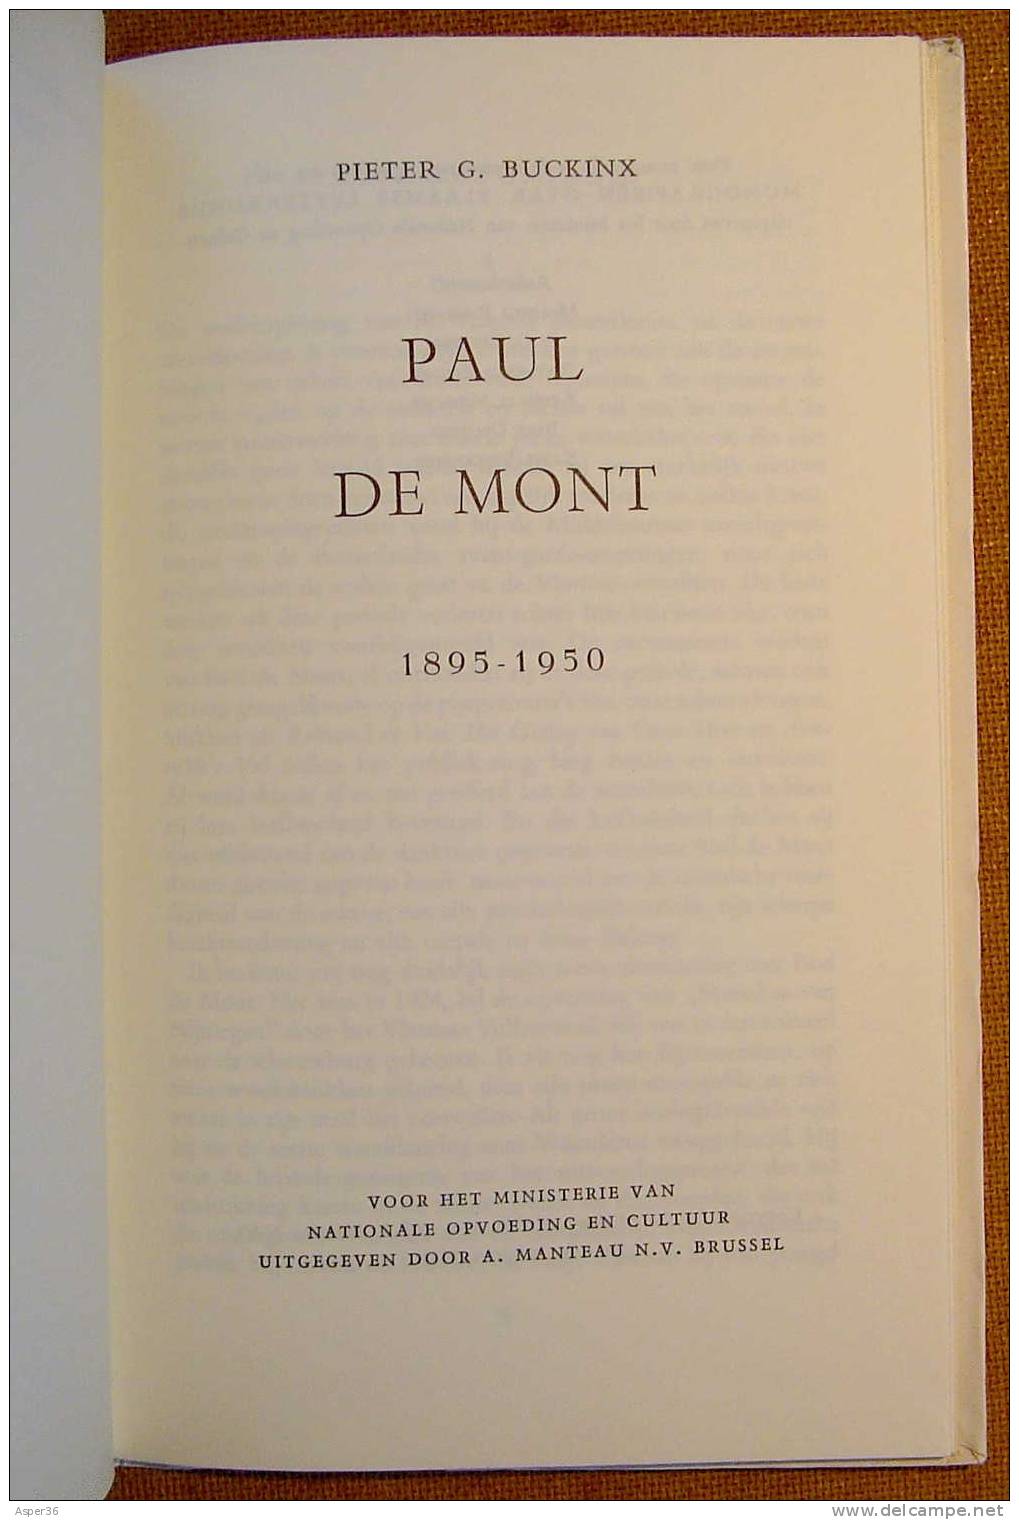 Monografieën Over Vlaamse Letterkunde "Paul De Mont Door Pieter G. Buckinx "1961 - Anciens